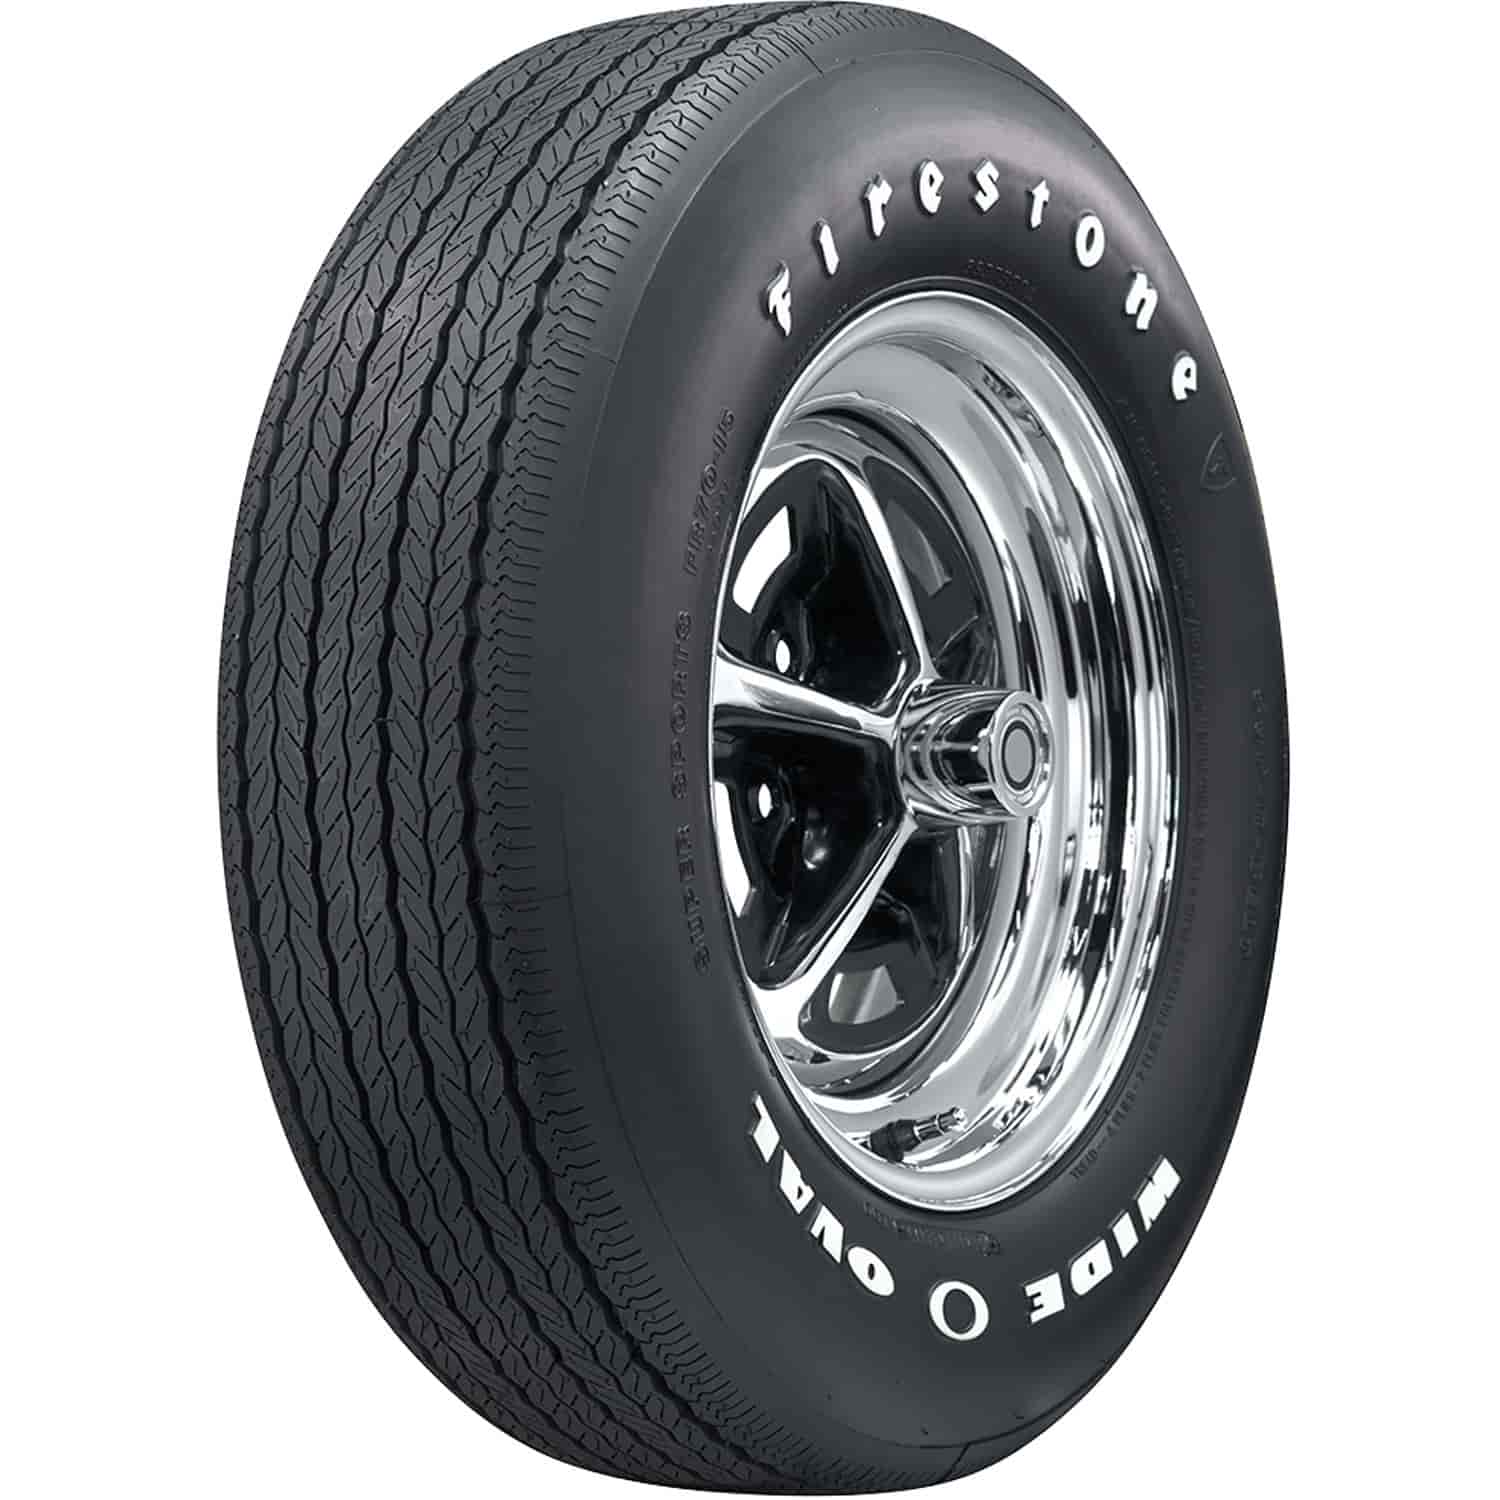 Firestone Wide Oval Radial Tire GR70-14